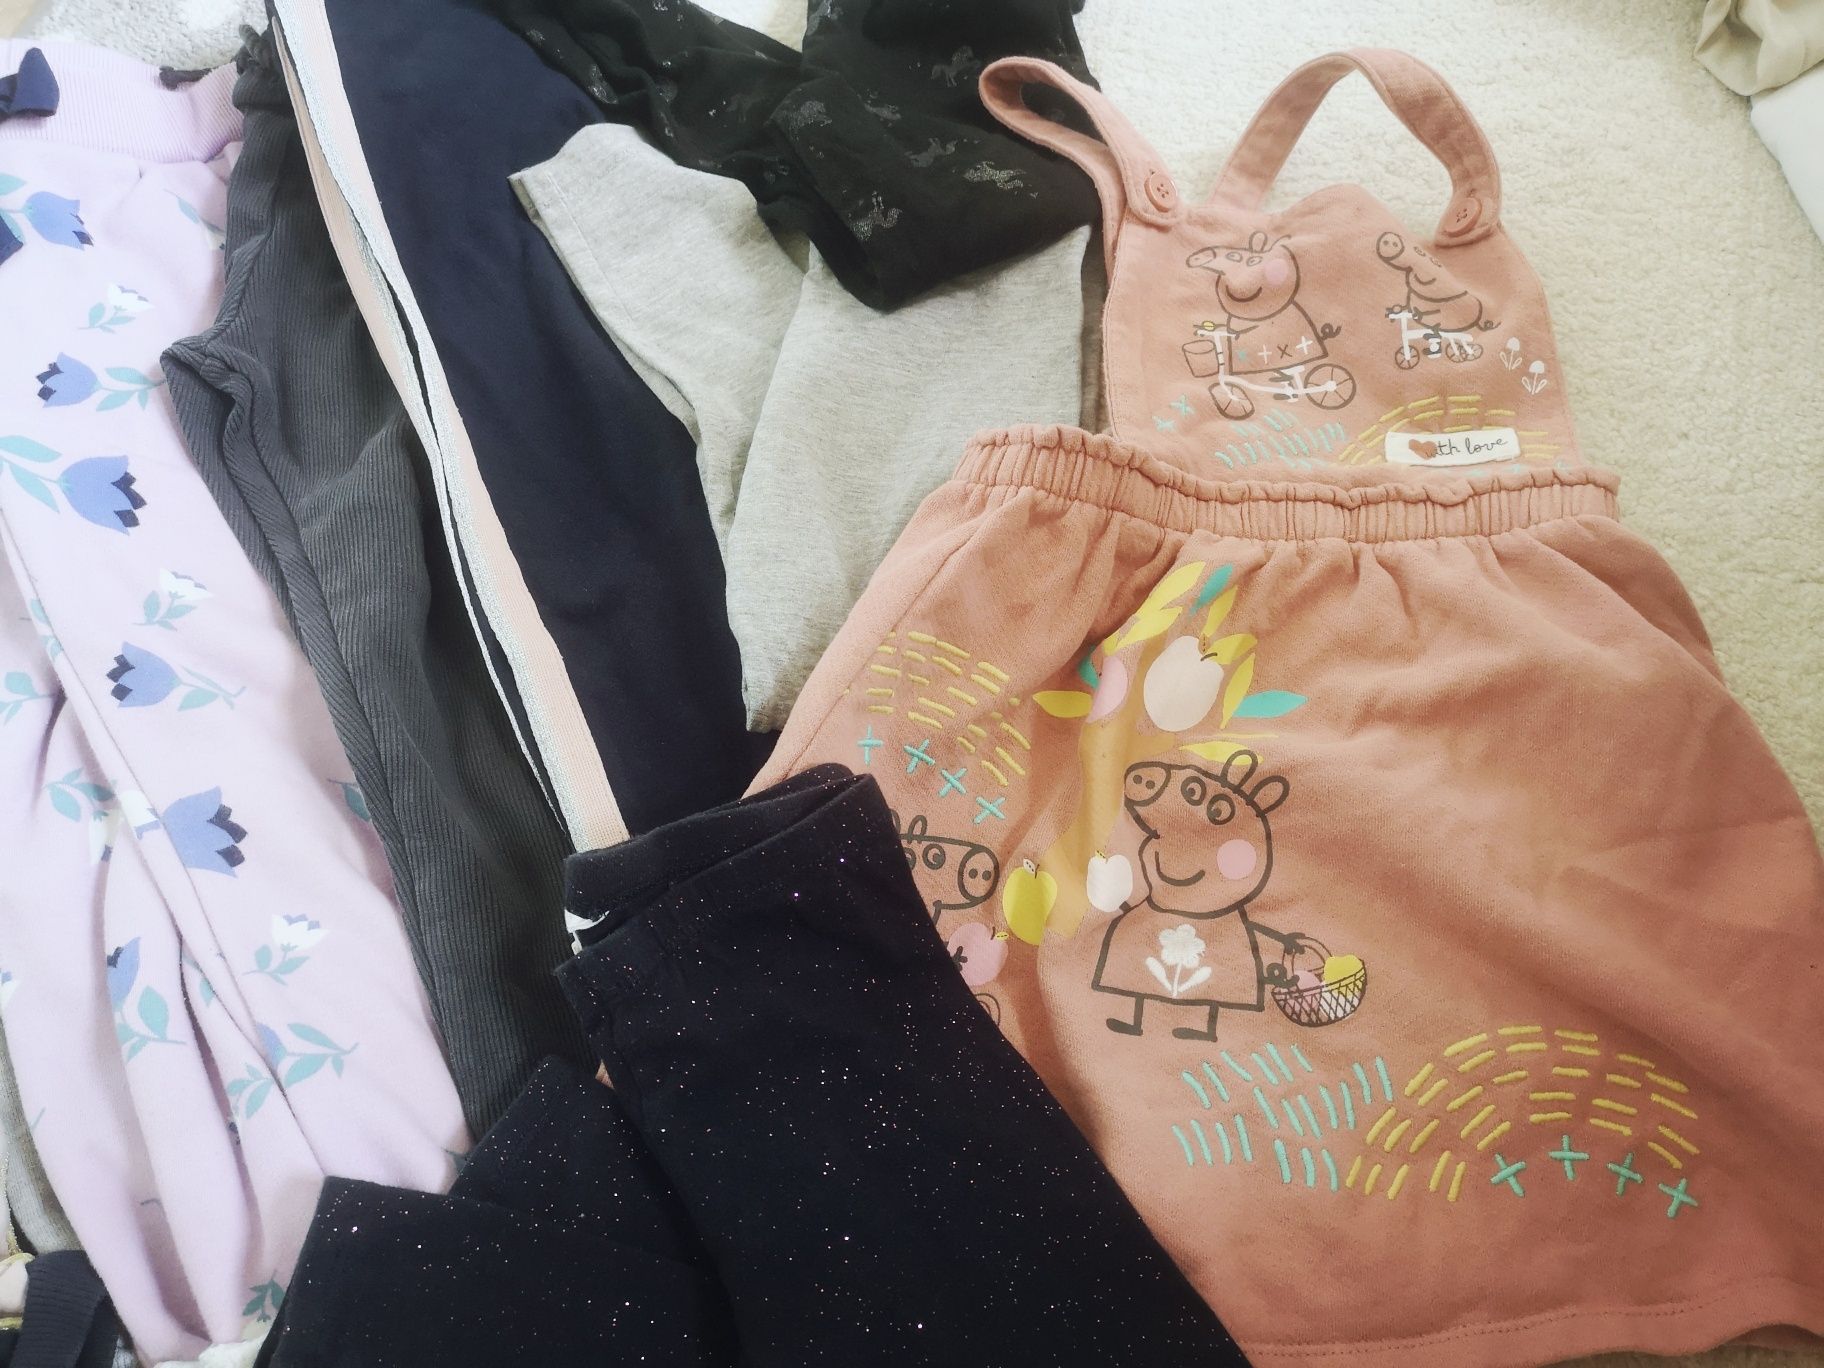 Paczka spodni dla dziewczynki 104cm Primark  Zara H&M spódnica Peppa